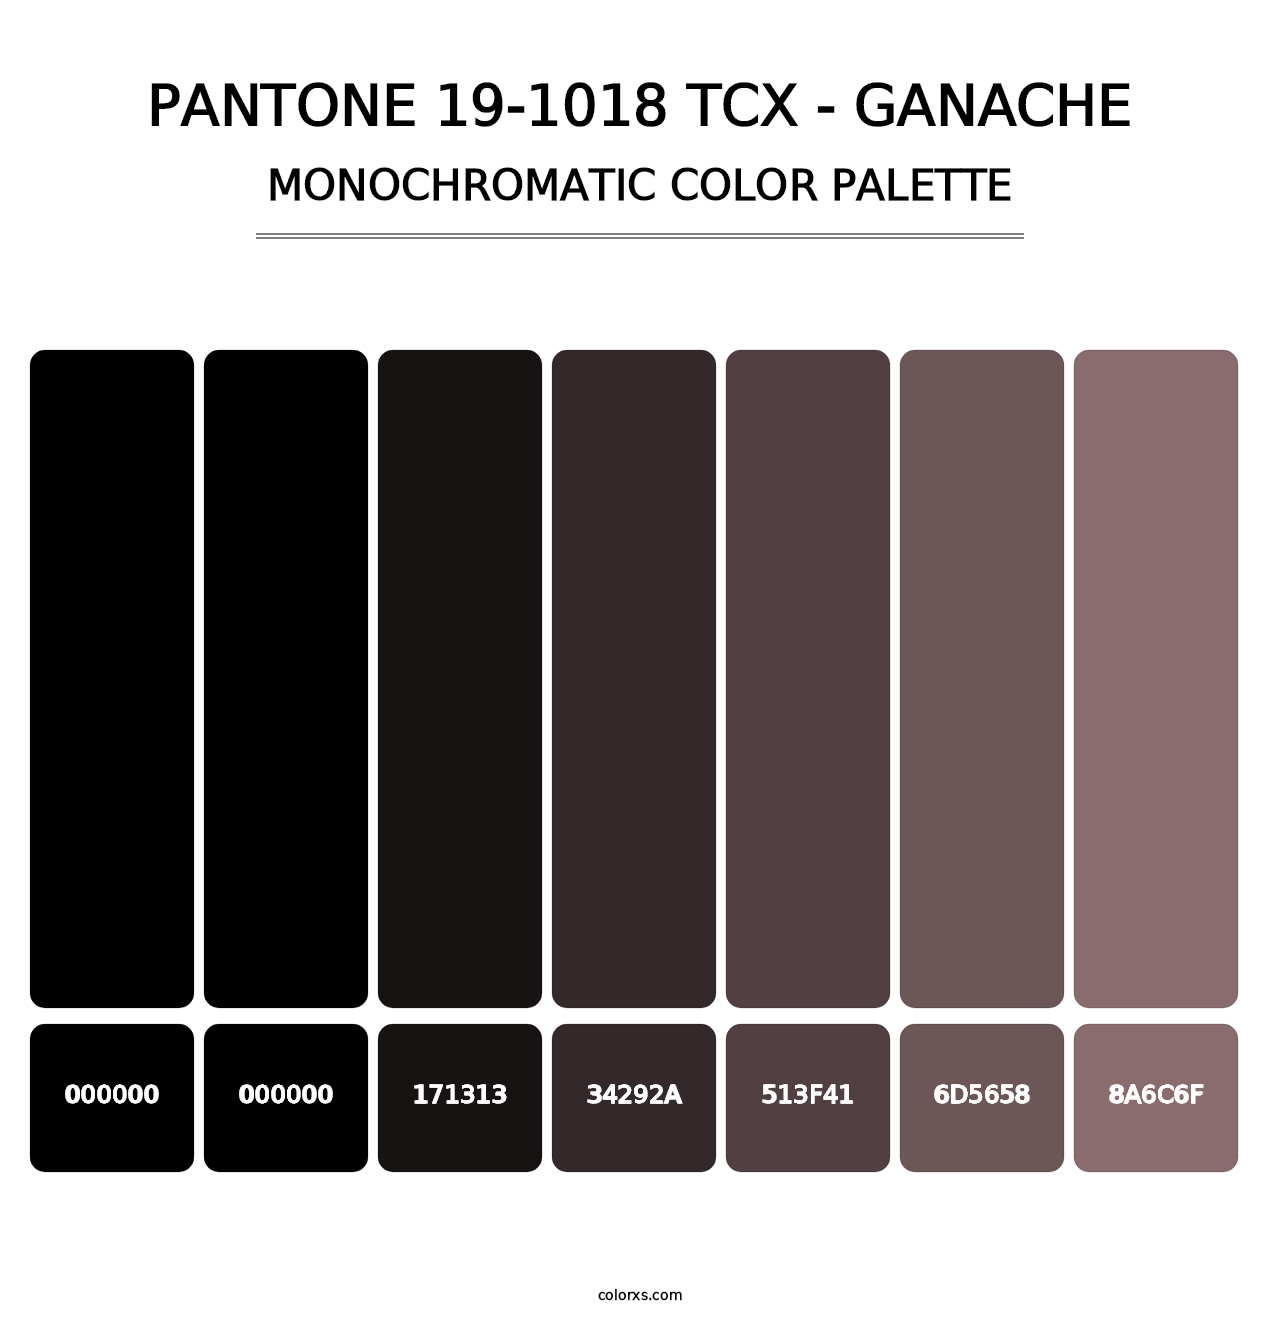 PANTONE 19-1018 TCX - Ganache - Monochromatic Color Palette